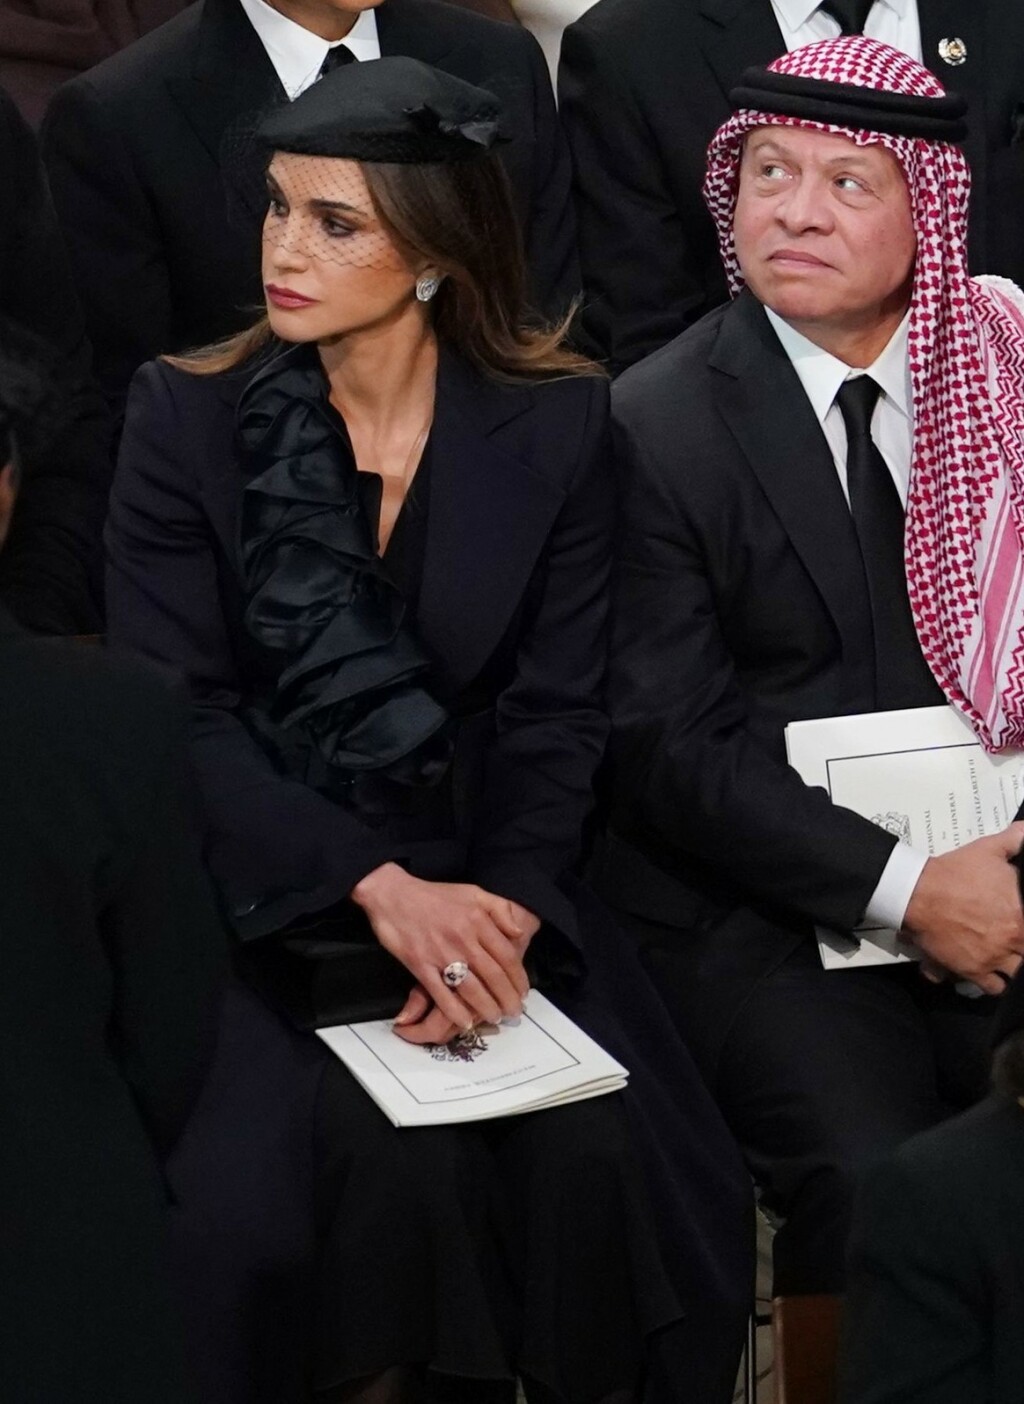 Jordanska kraljica Rania i kralj Abdullah II.